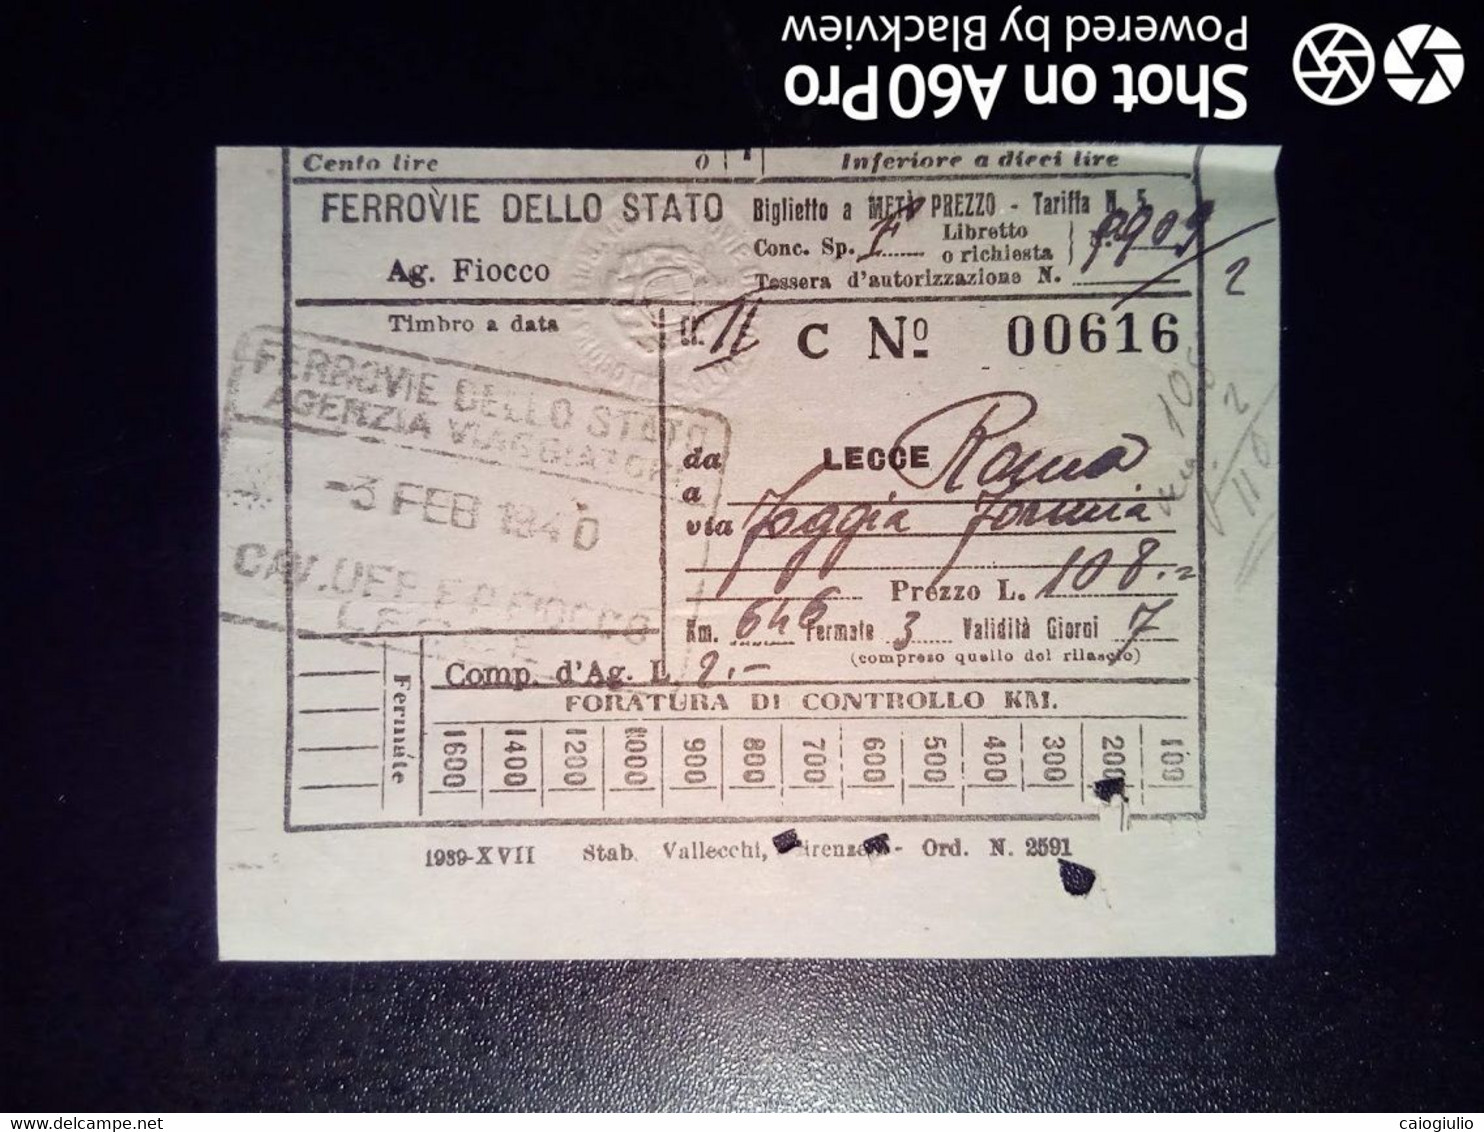 BIGLIETTO - TICKET F.S. - FERROVIE DELLO STATO - LECCE ROMA, VIA FOGGIA, FORMIA 2a CL - 1940 - Europa